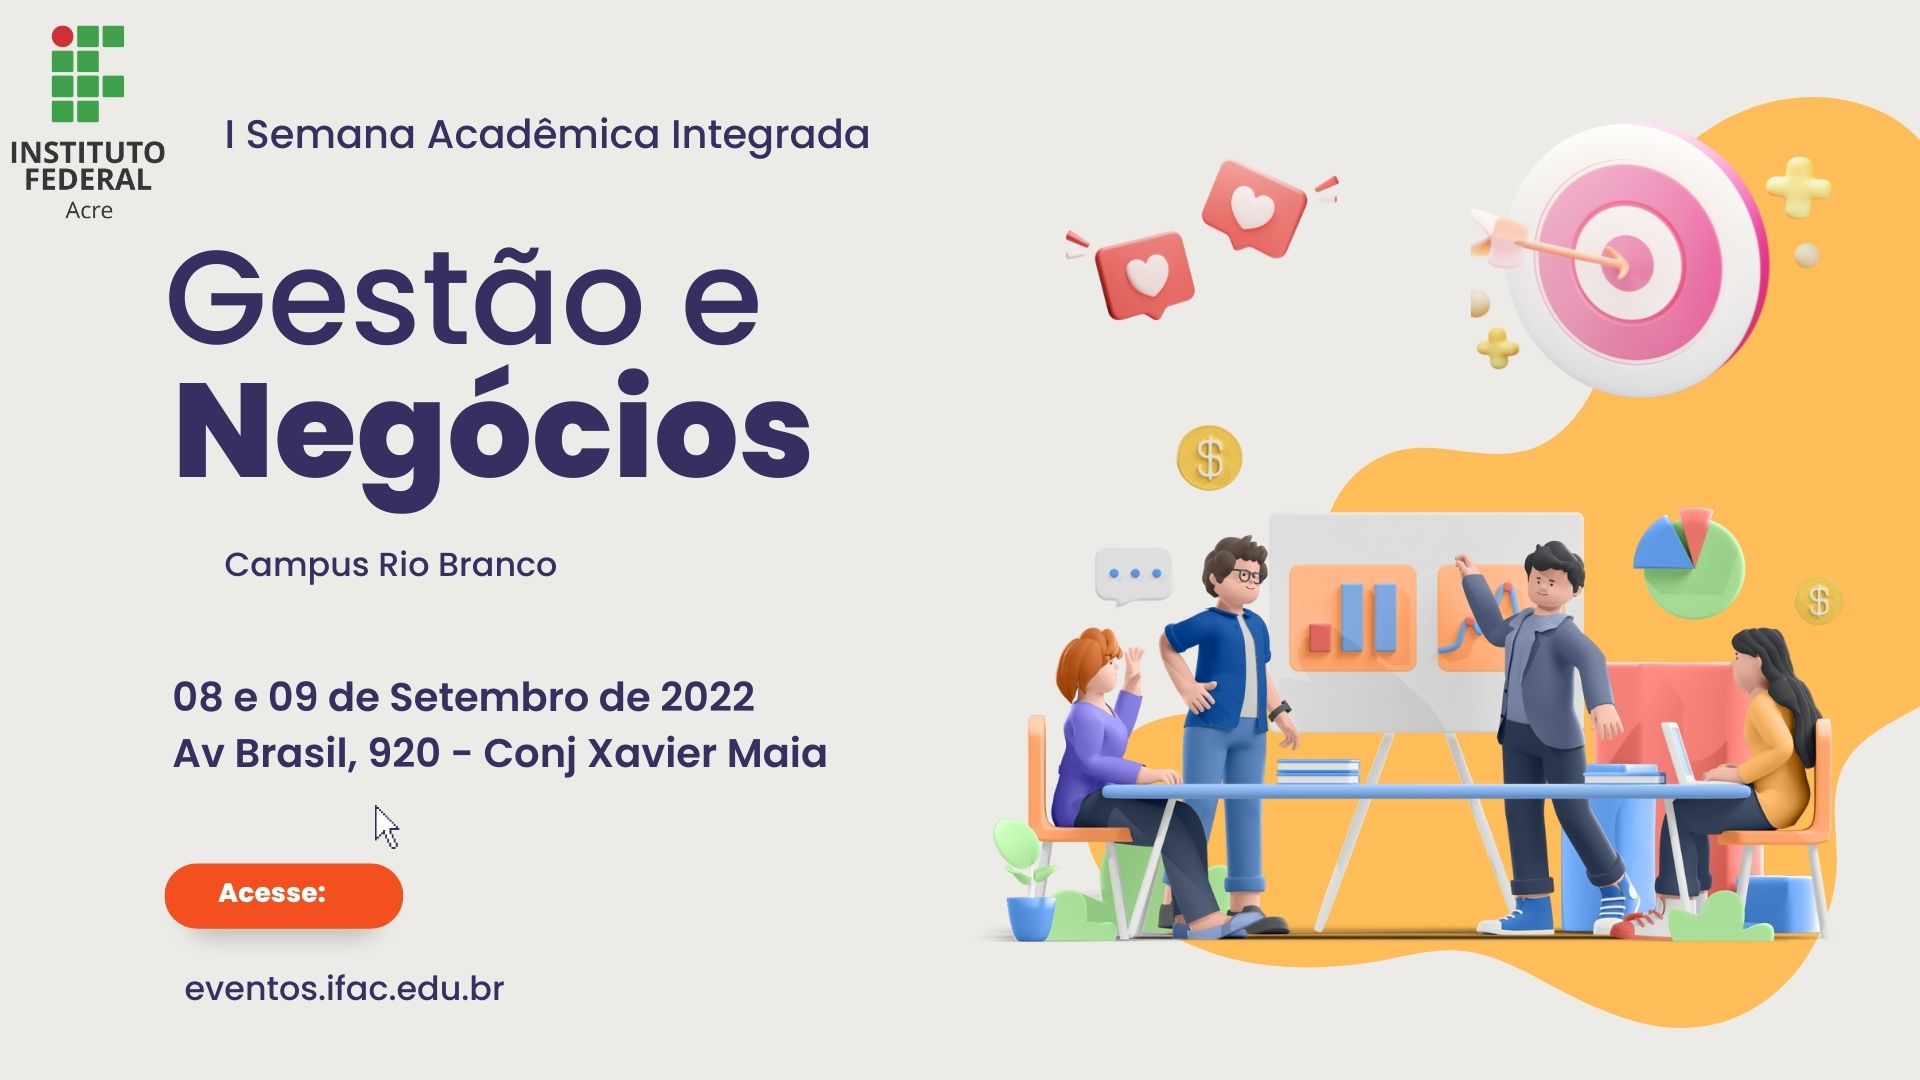 I Semana Acadêmica Integrada de Gestão e Negócios do IFAC - Campus Rio Branco